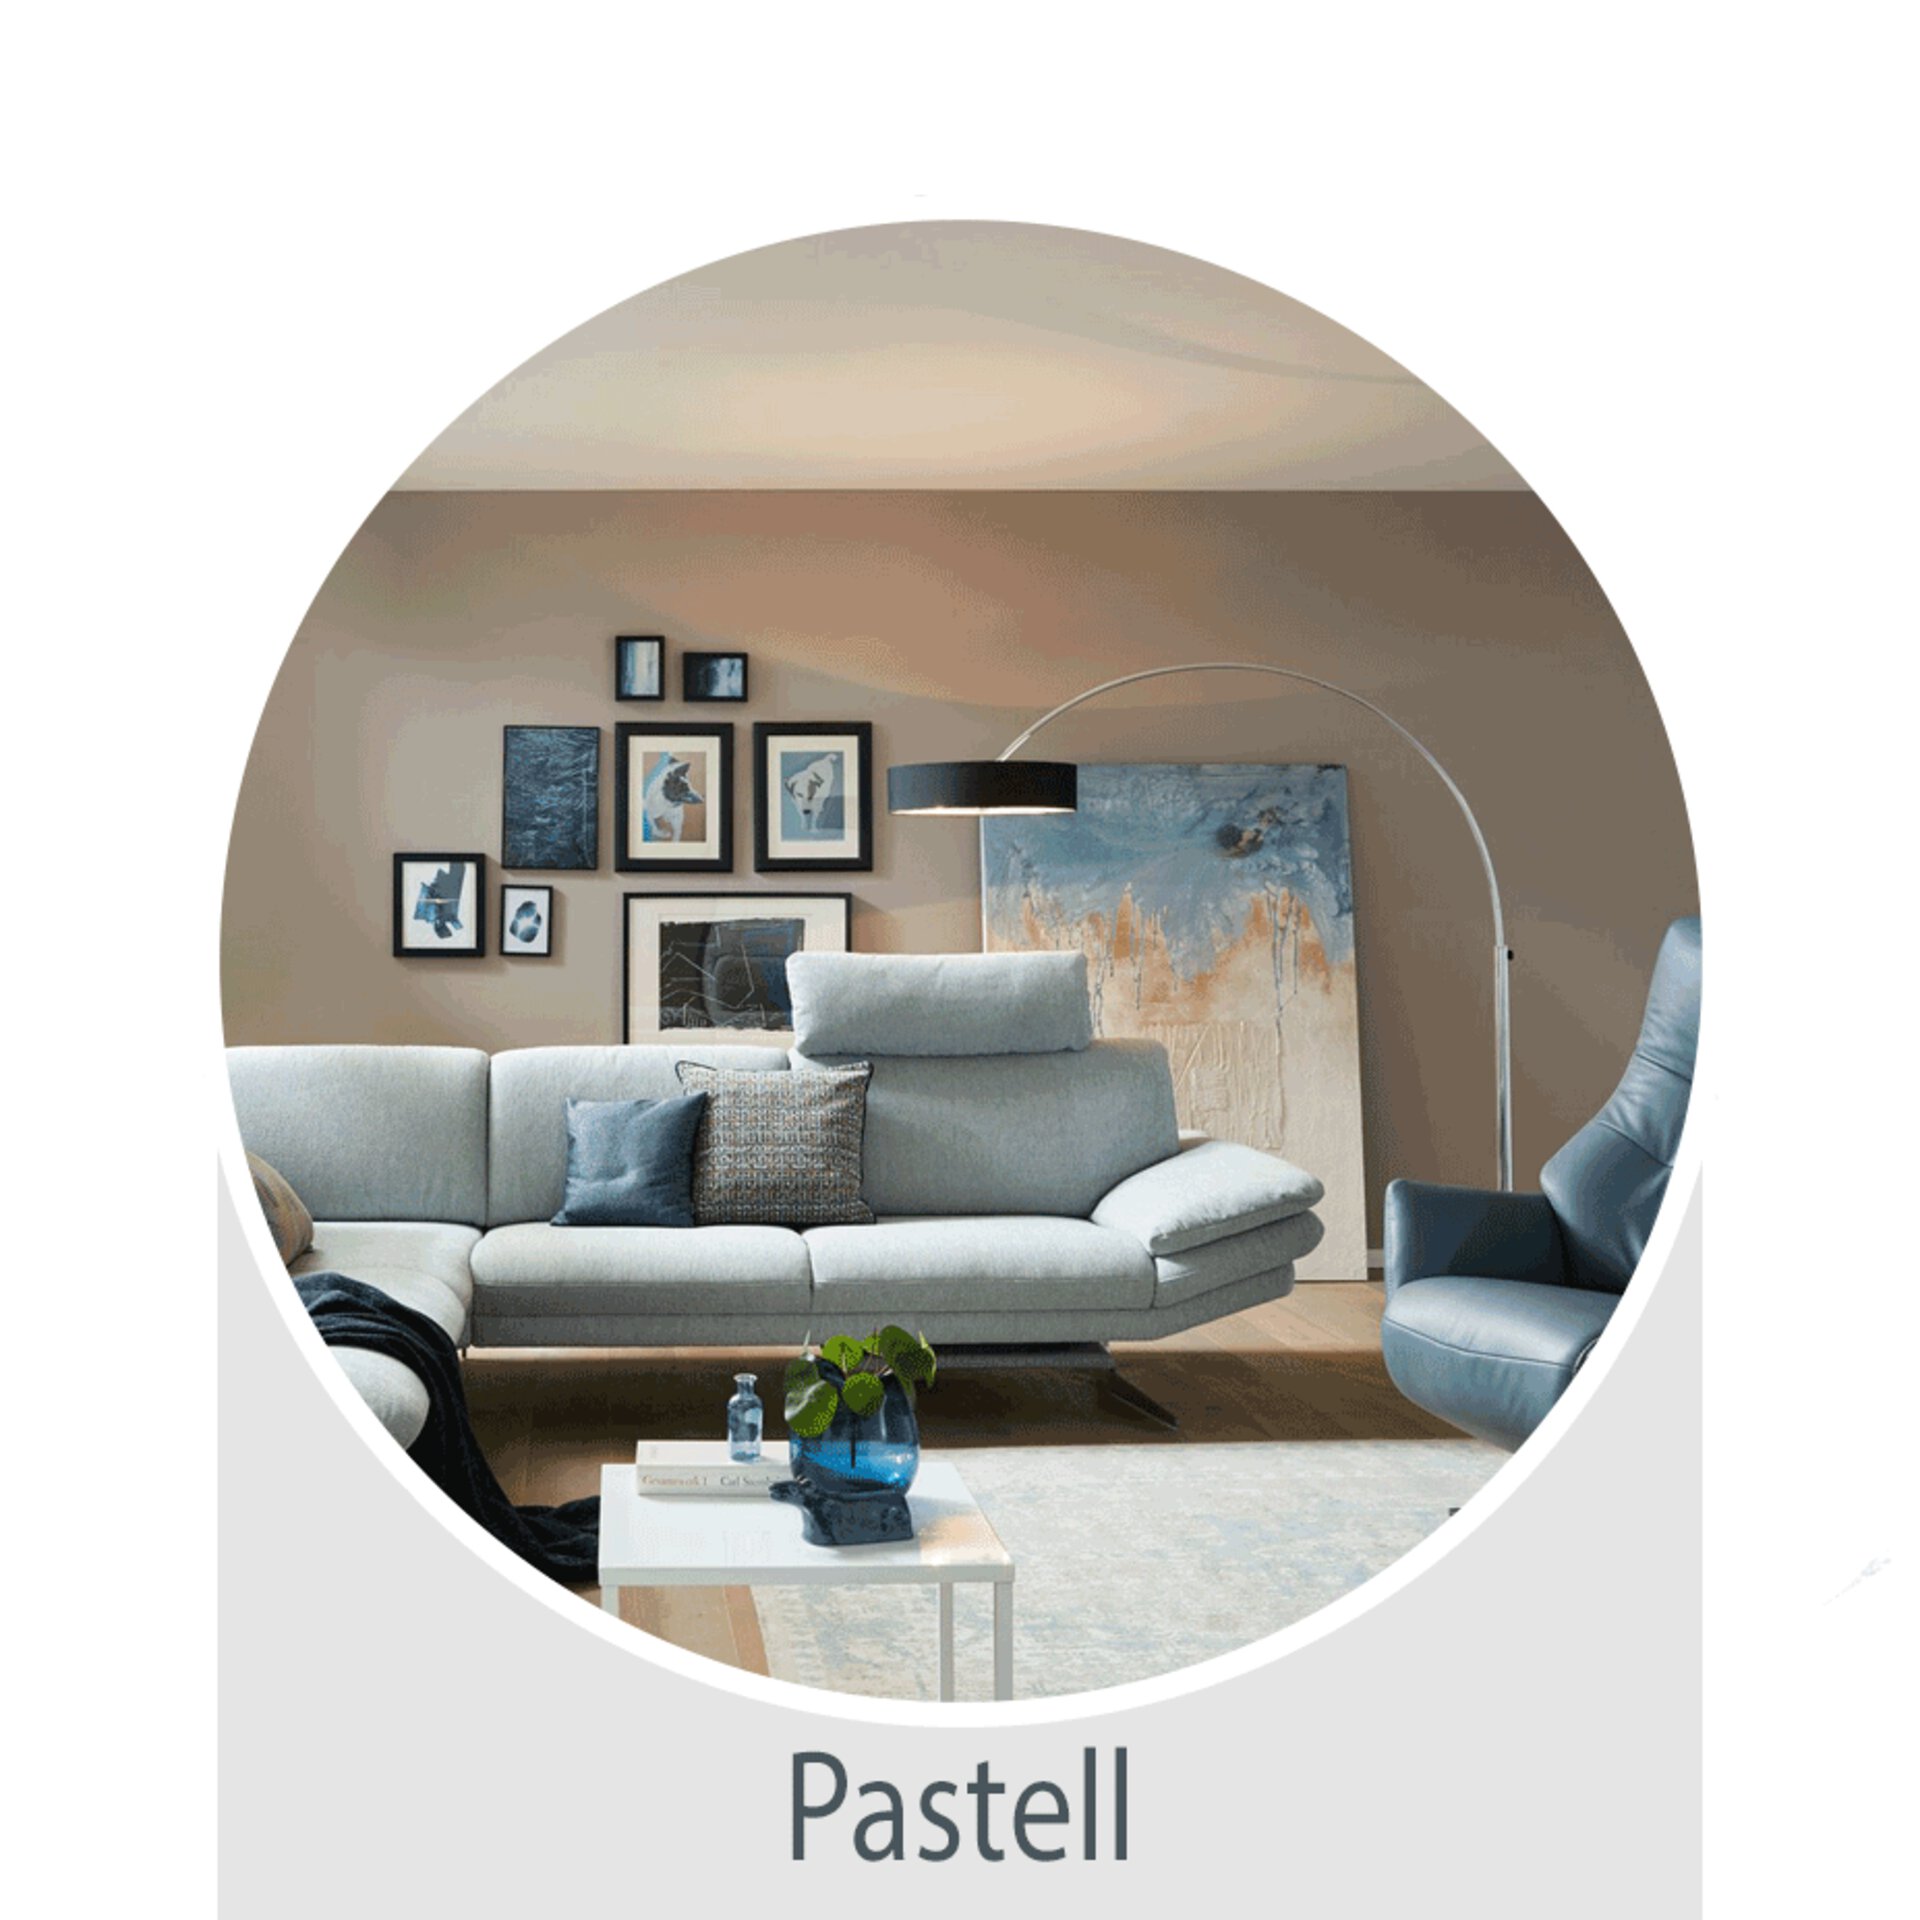 Der Wohntrend Pastell -  jetzt bei Möbel Inhofer entdecken und inspirieren lassen